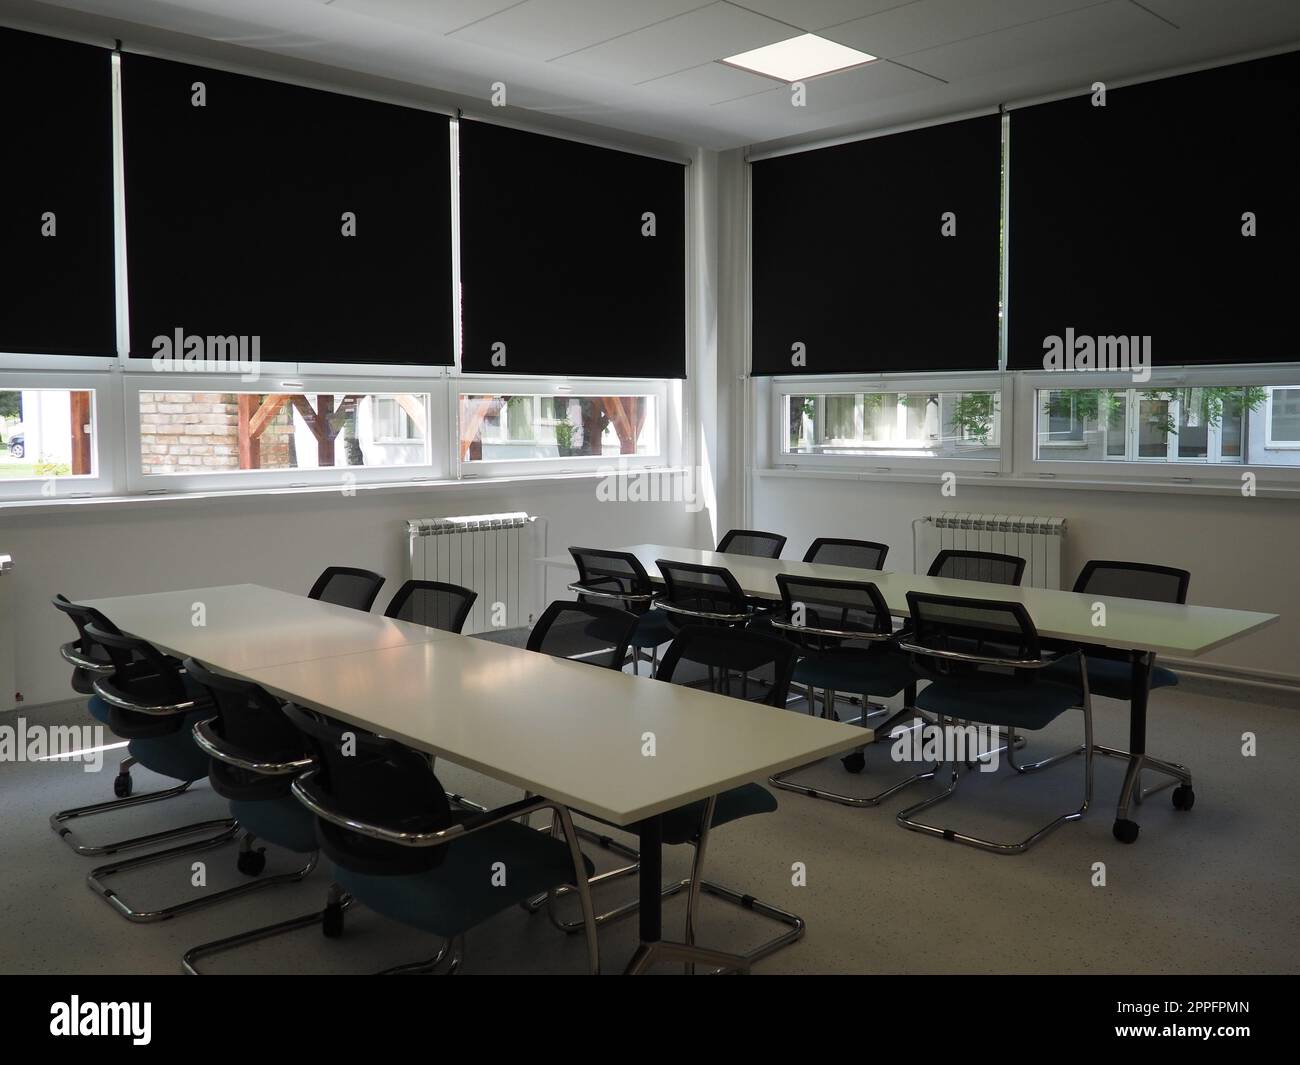 tavolo e sedie nella sala riunioni in ufficio, in classe o nella sala biblioteca. Vernici bianche, nere e grigie all'interno. Tende nere per oscurare la stanza. Design degli interni moderno Foto Stock